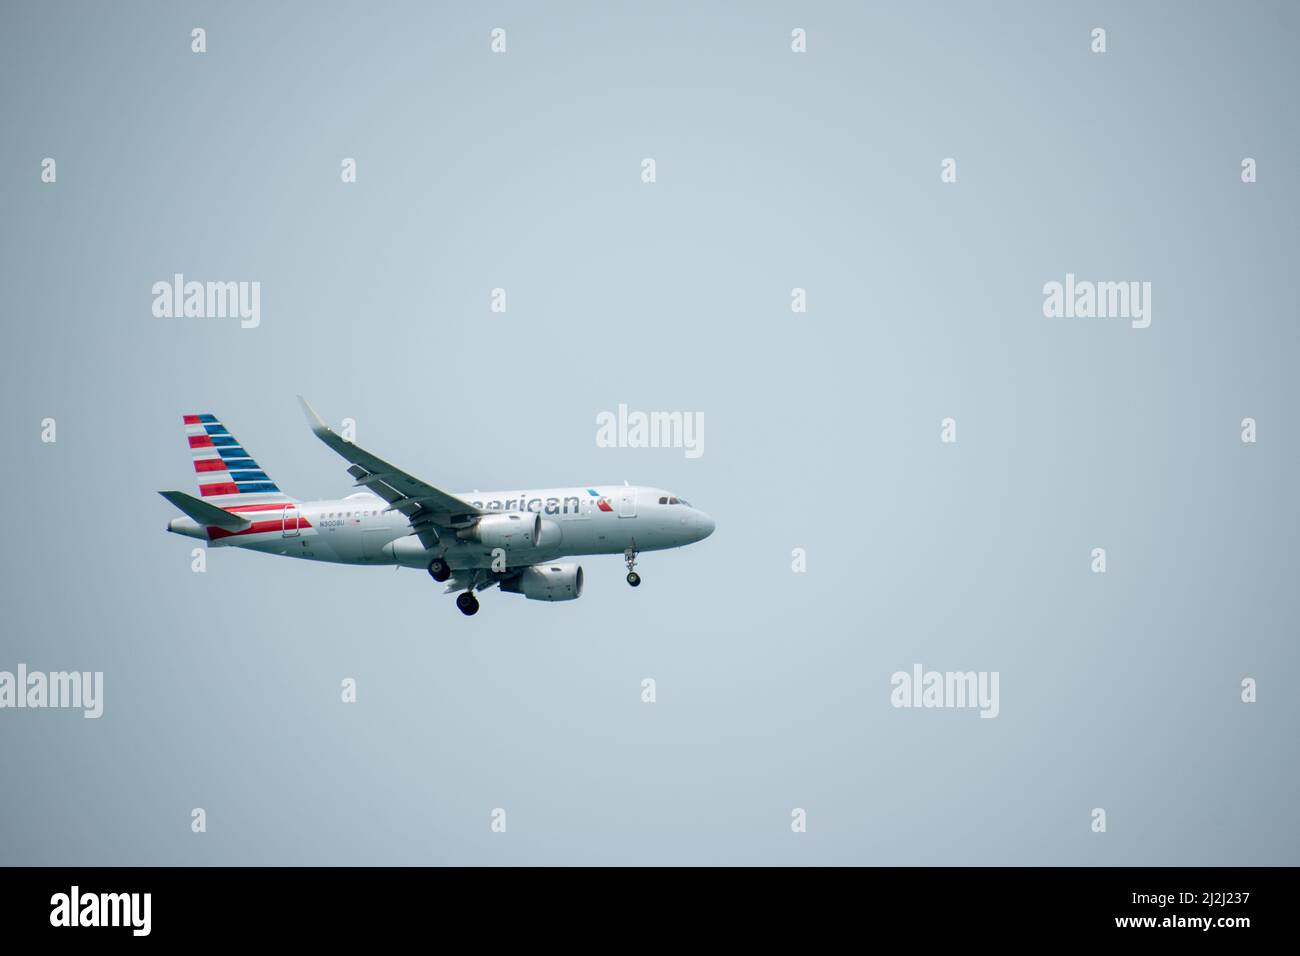 Key West, FL - Sep 9 2021: Ein Airbus A319-100 von American Airlines wurde 2013 in Hamburg gebaut Stockfoto